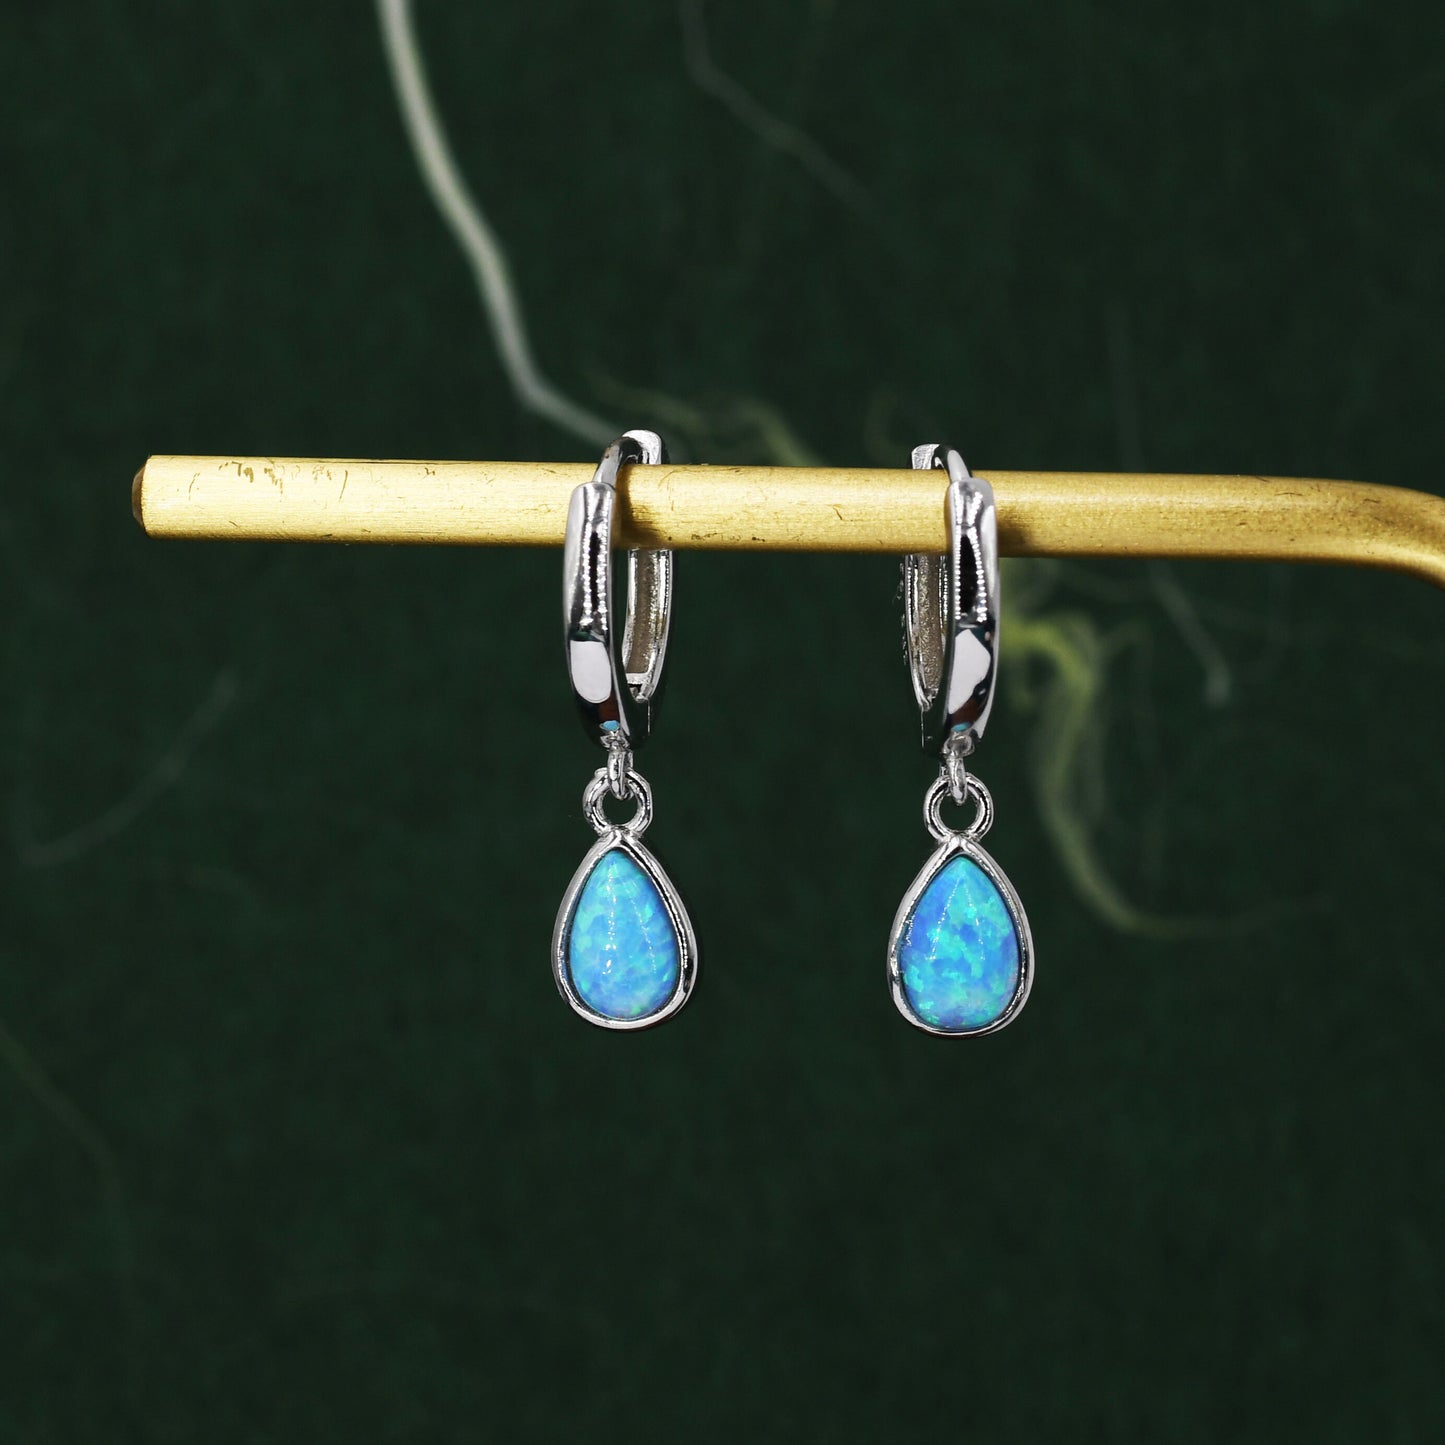 Sterling Silver Dangling Opal Droplet Hoop Earrings, Blue Opal or Fire Opal Charm Dangle Hoop Earrings, Silver or Gold